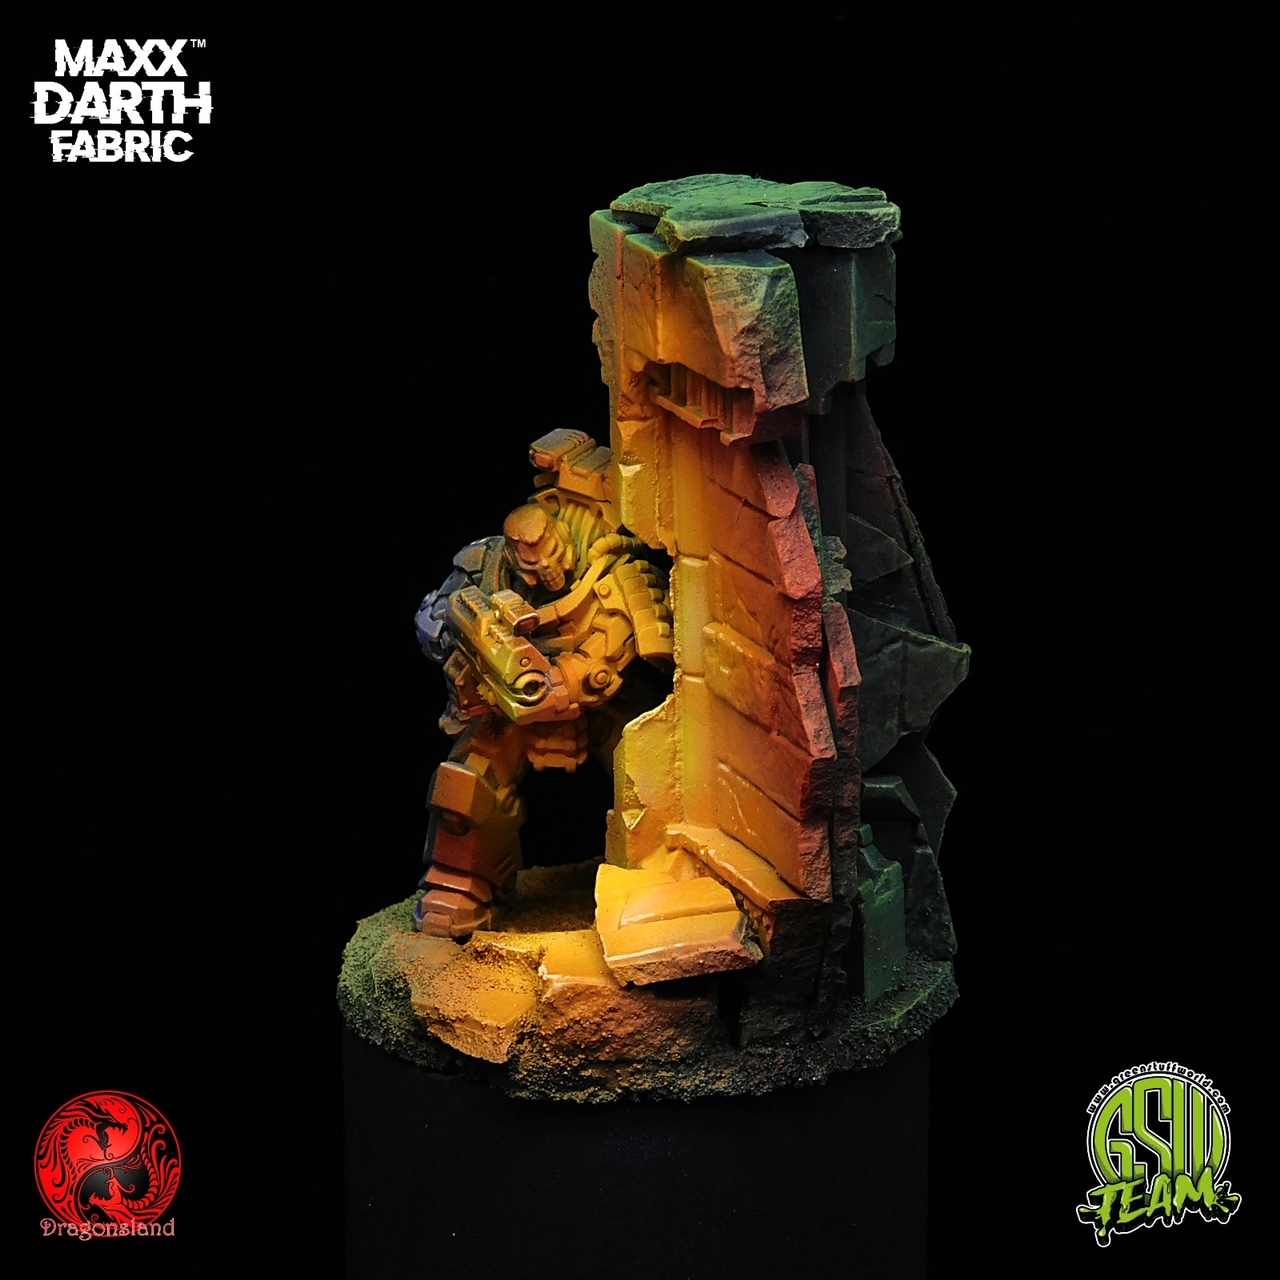 Green Stuff World's Maxx Darth Review: The Blackest Miniature